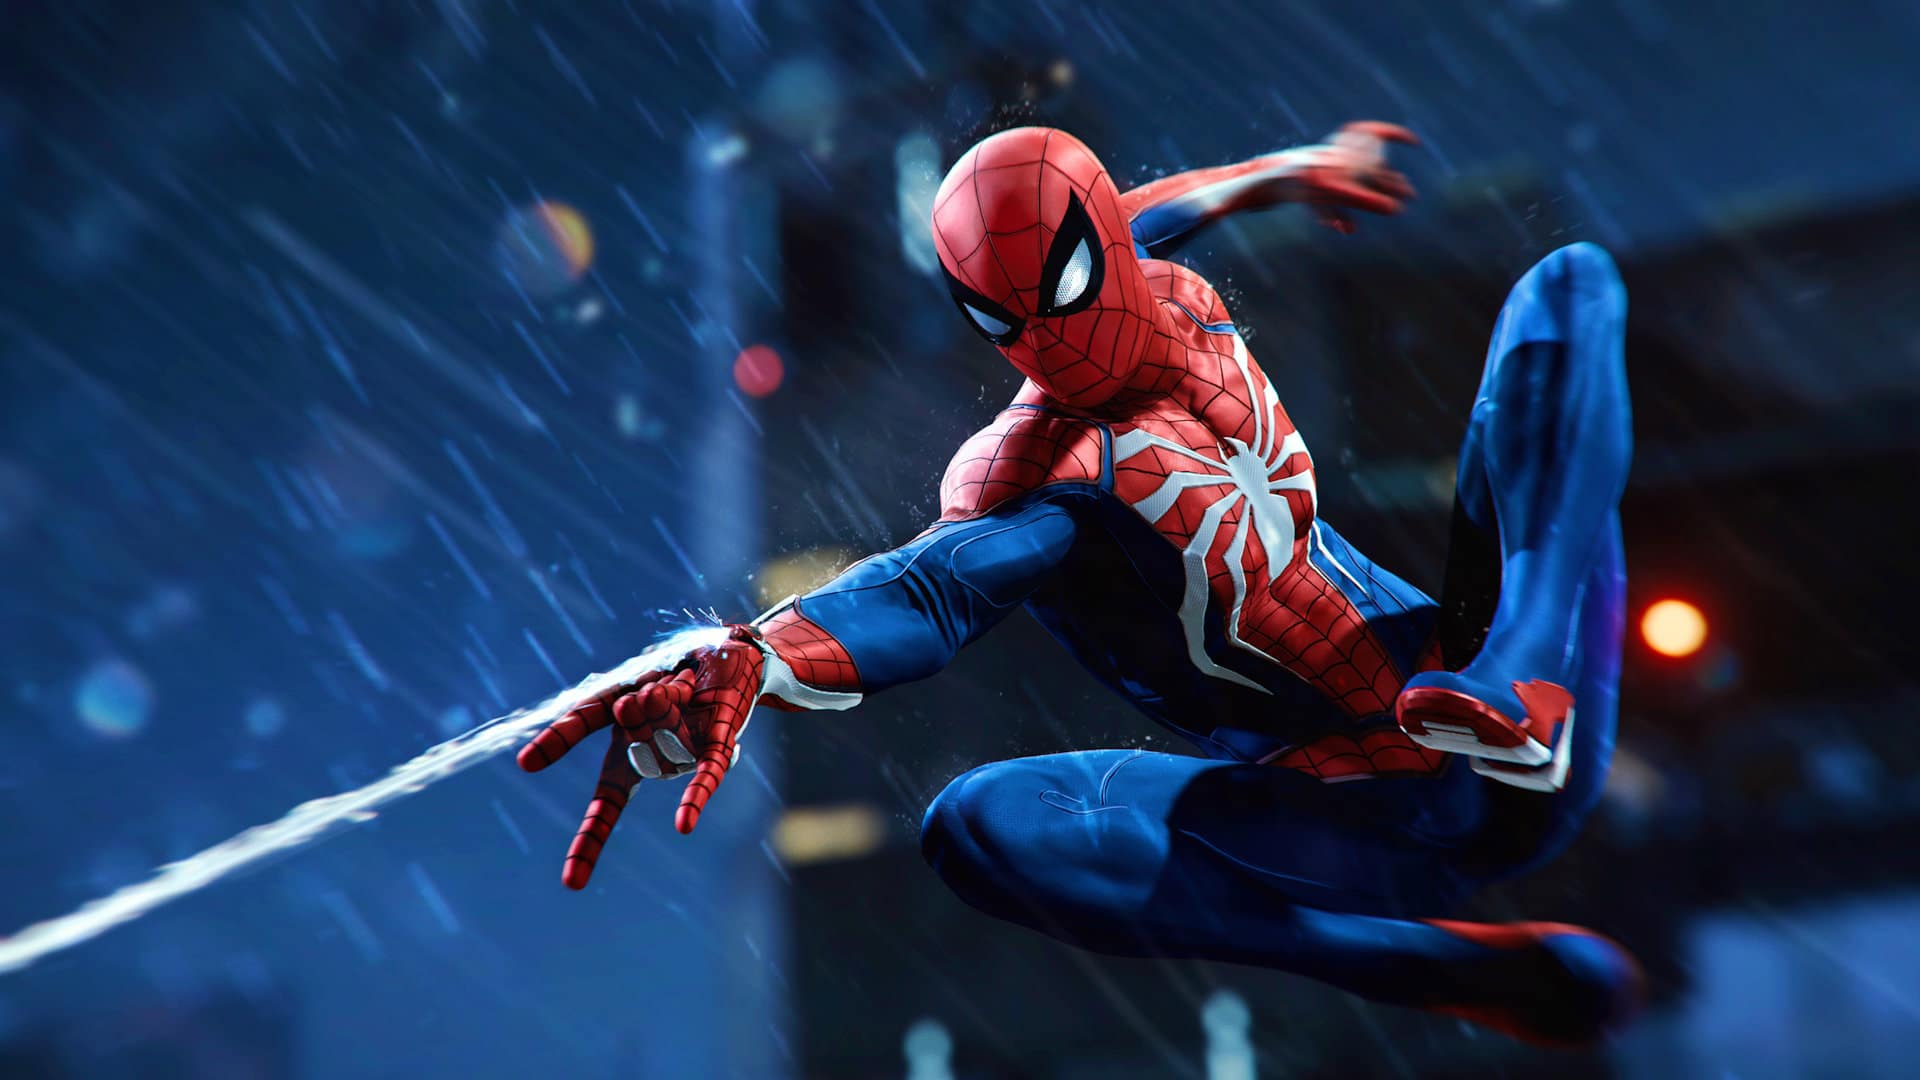 Immagine di Spider-Man Remastered su PC ha già delle mod che ci fanno giocare nei panni di Stan Lee, Miles Morales e molti altri